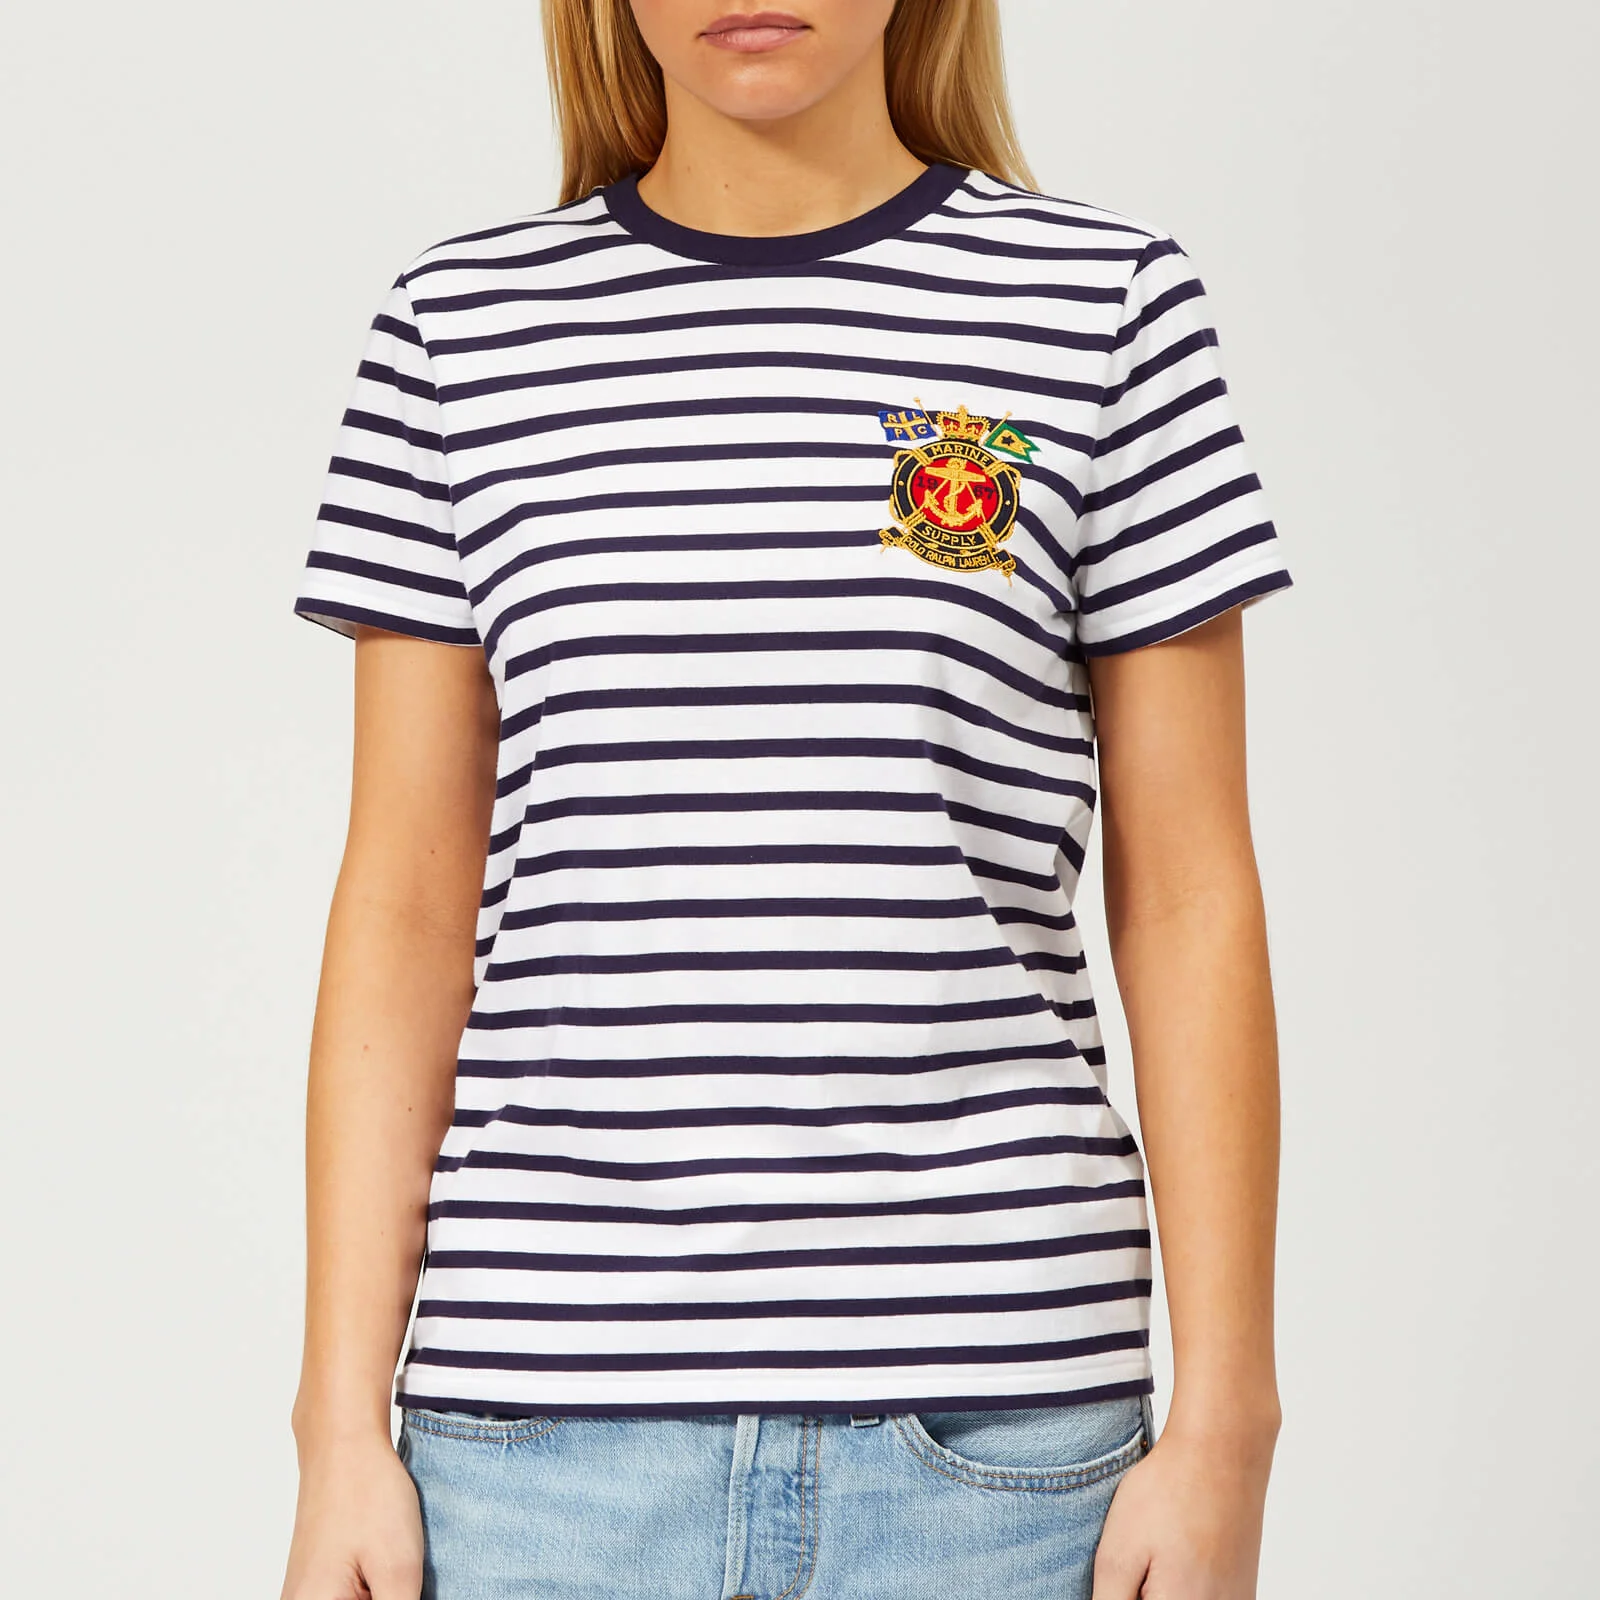 Polo Ralph Lauren Women's Cross Flag Stripe T-Shirt - Multi Image 1